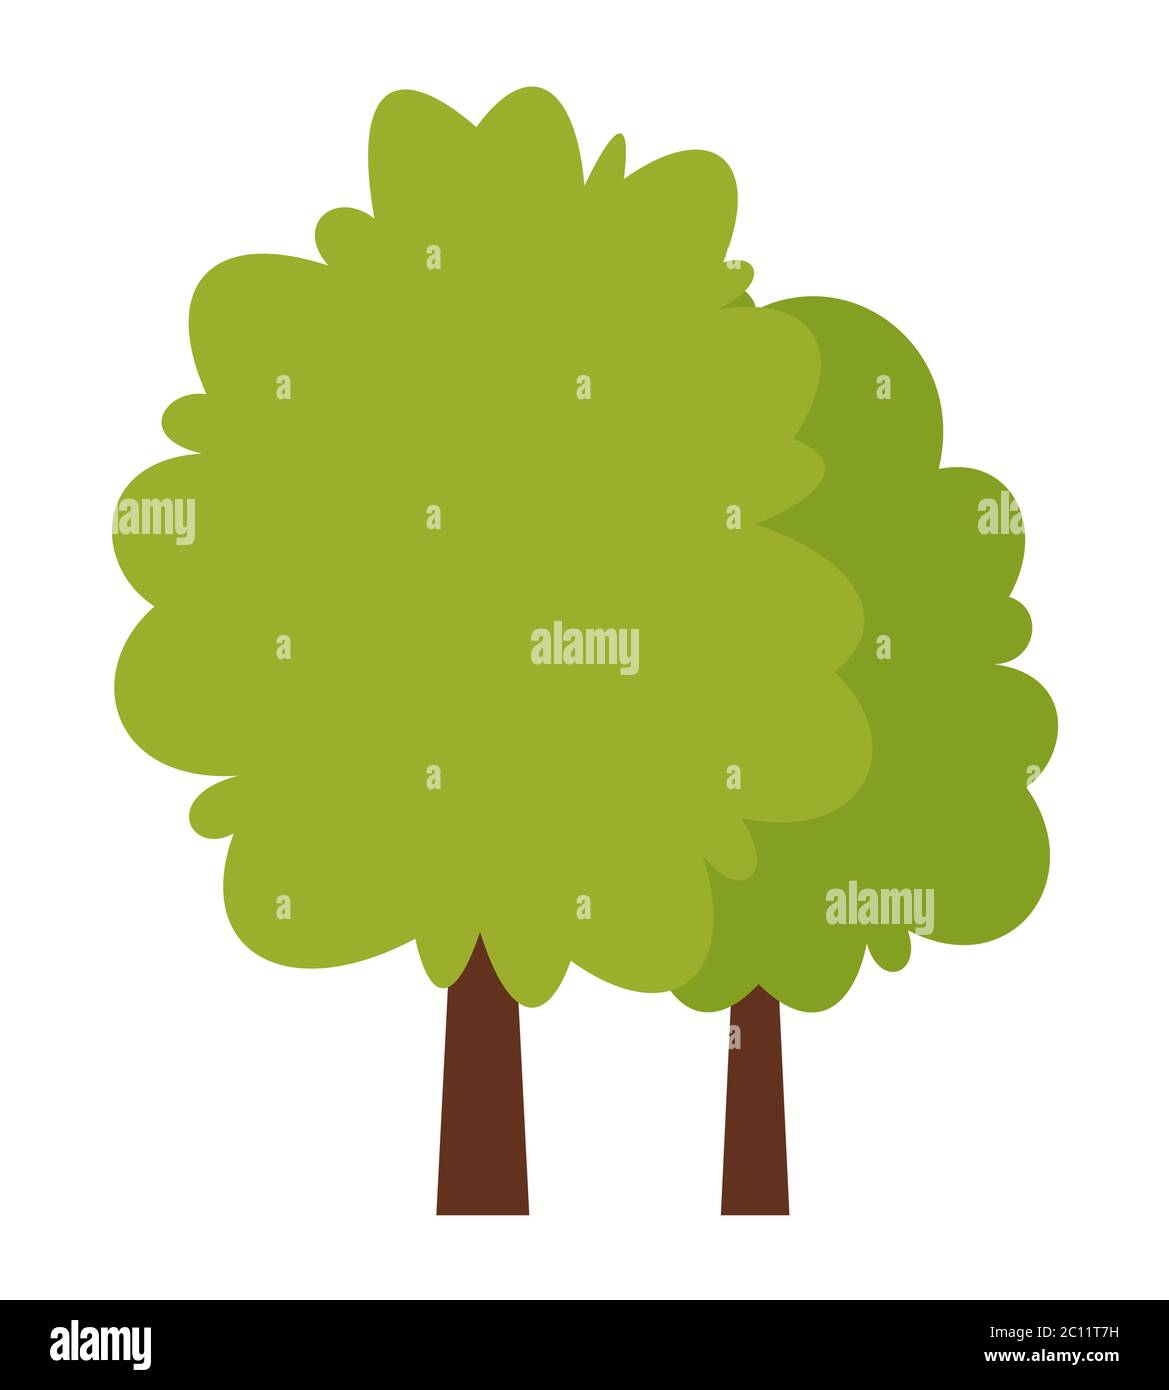 Icona vettoriale degli alberi verdi piatti isolata su sfondo bianco. Illustrazione Vettoriale